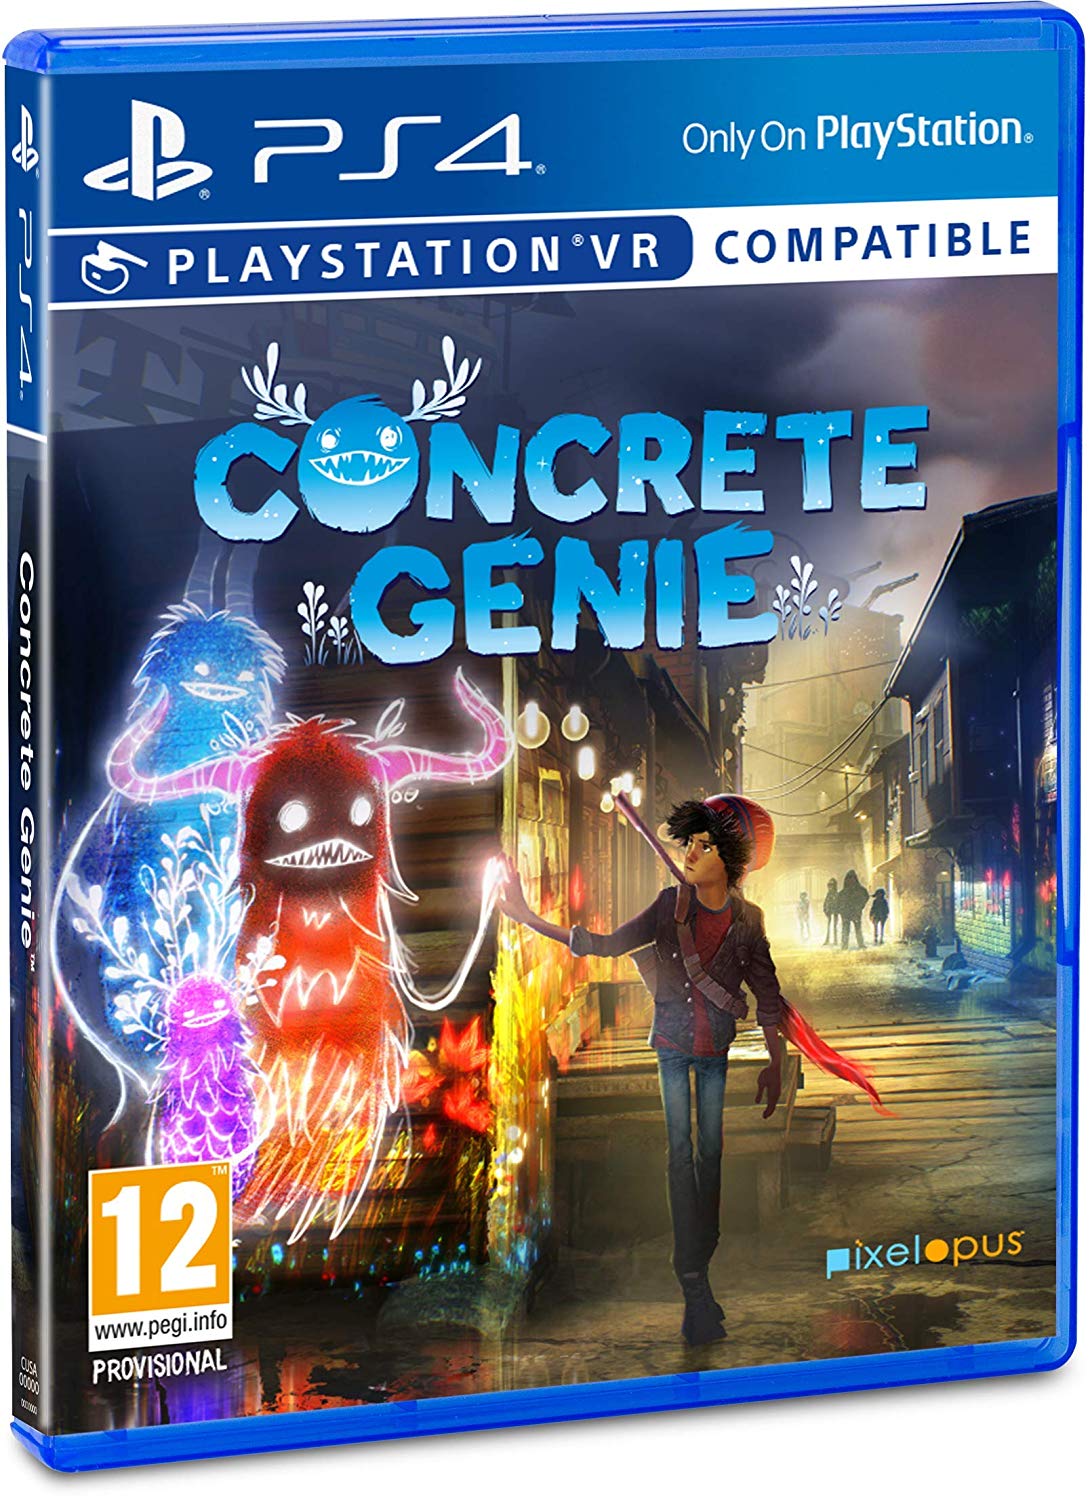 Concrete Genie (Compatible PSVR)